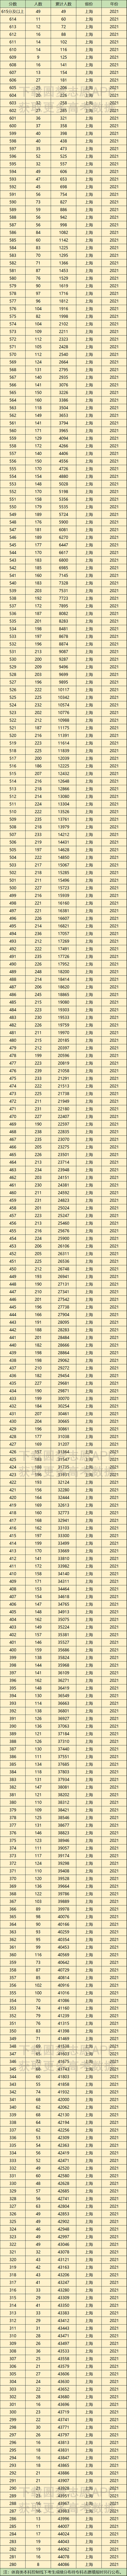 2022年上海高考一分一段表-上海高考位次表2022